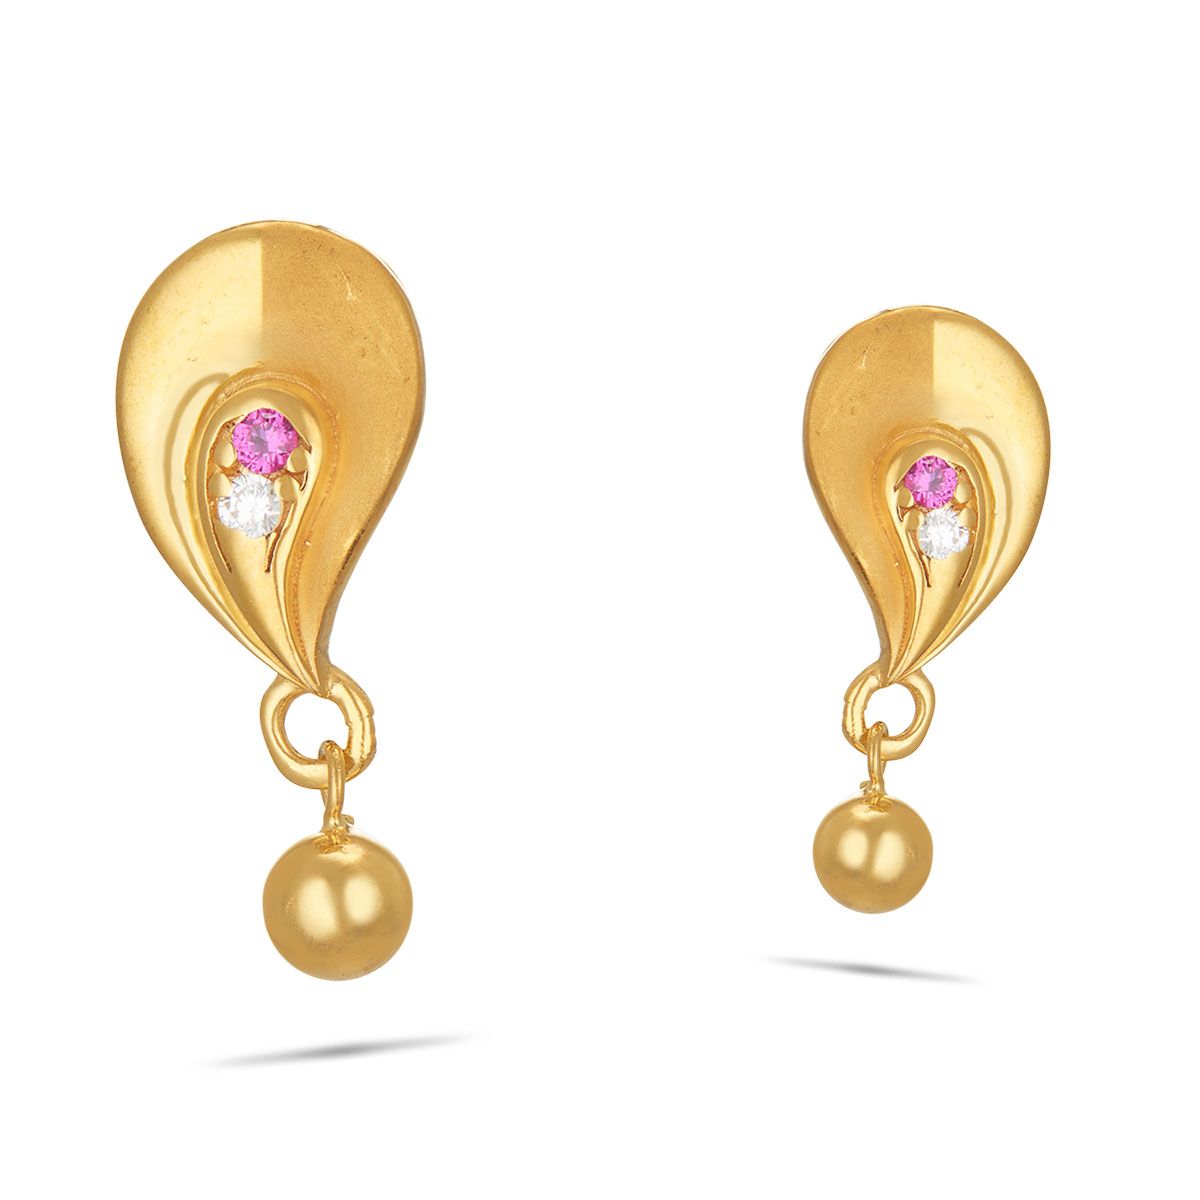 Small gold earrings || new model earrings designs 2022 | Latest earrings  design, Gold earrings designs, Trendy earrings